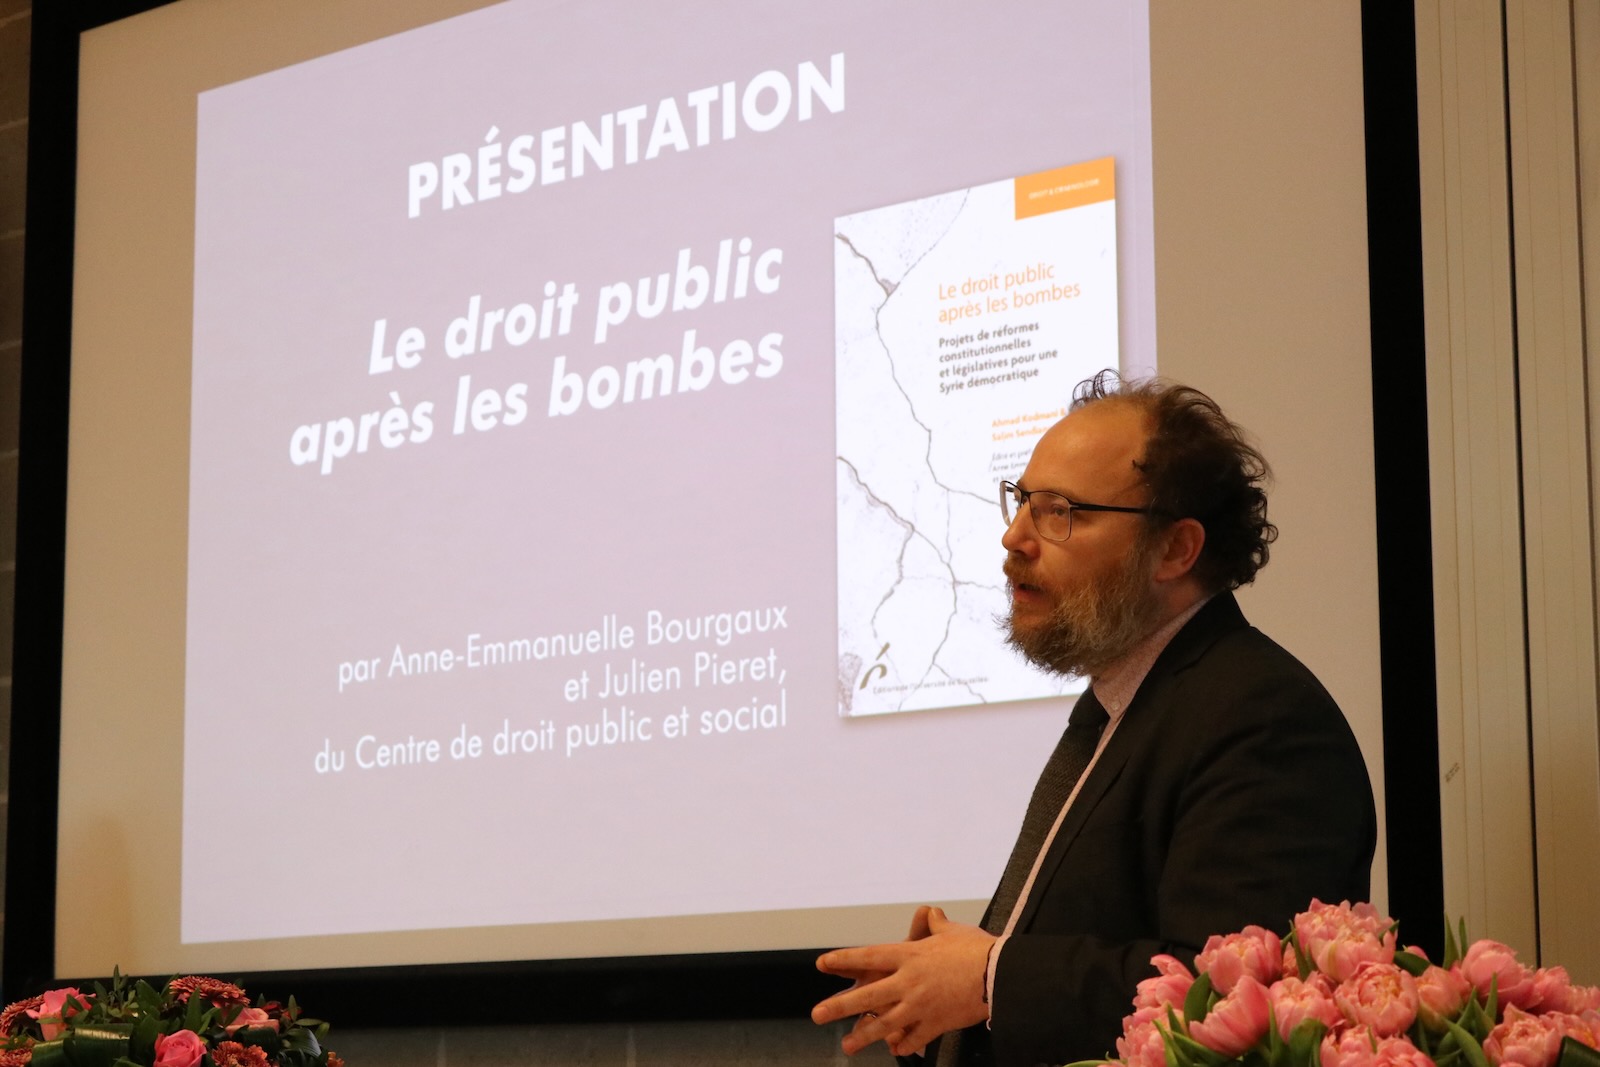 Julien Pieret - La droit public après les bombes